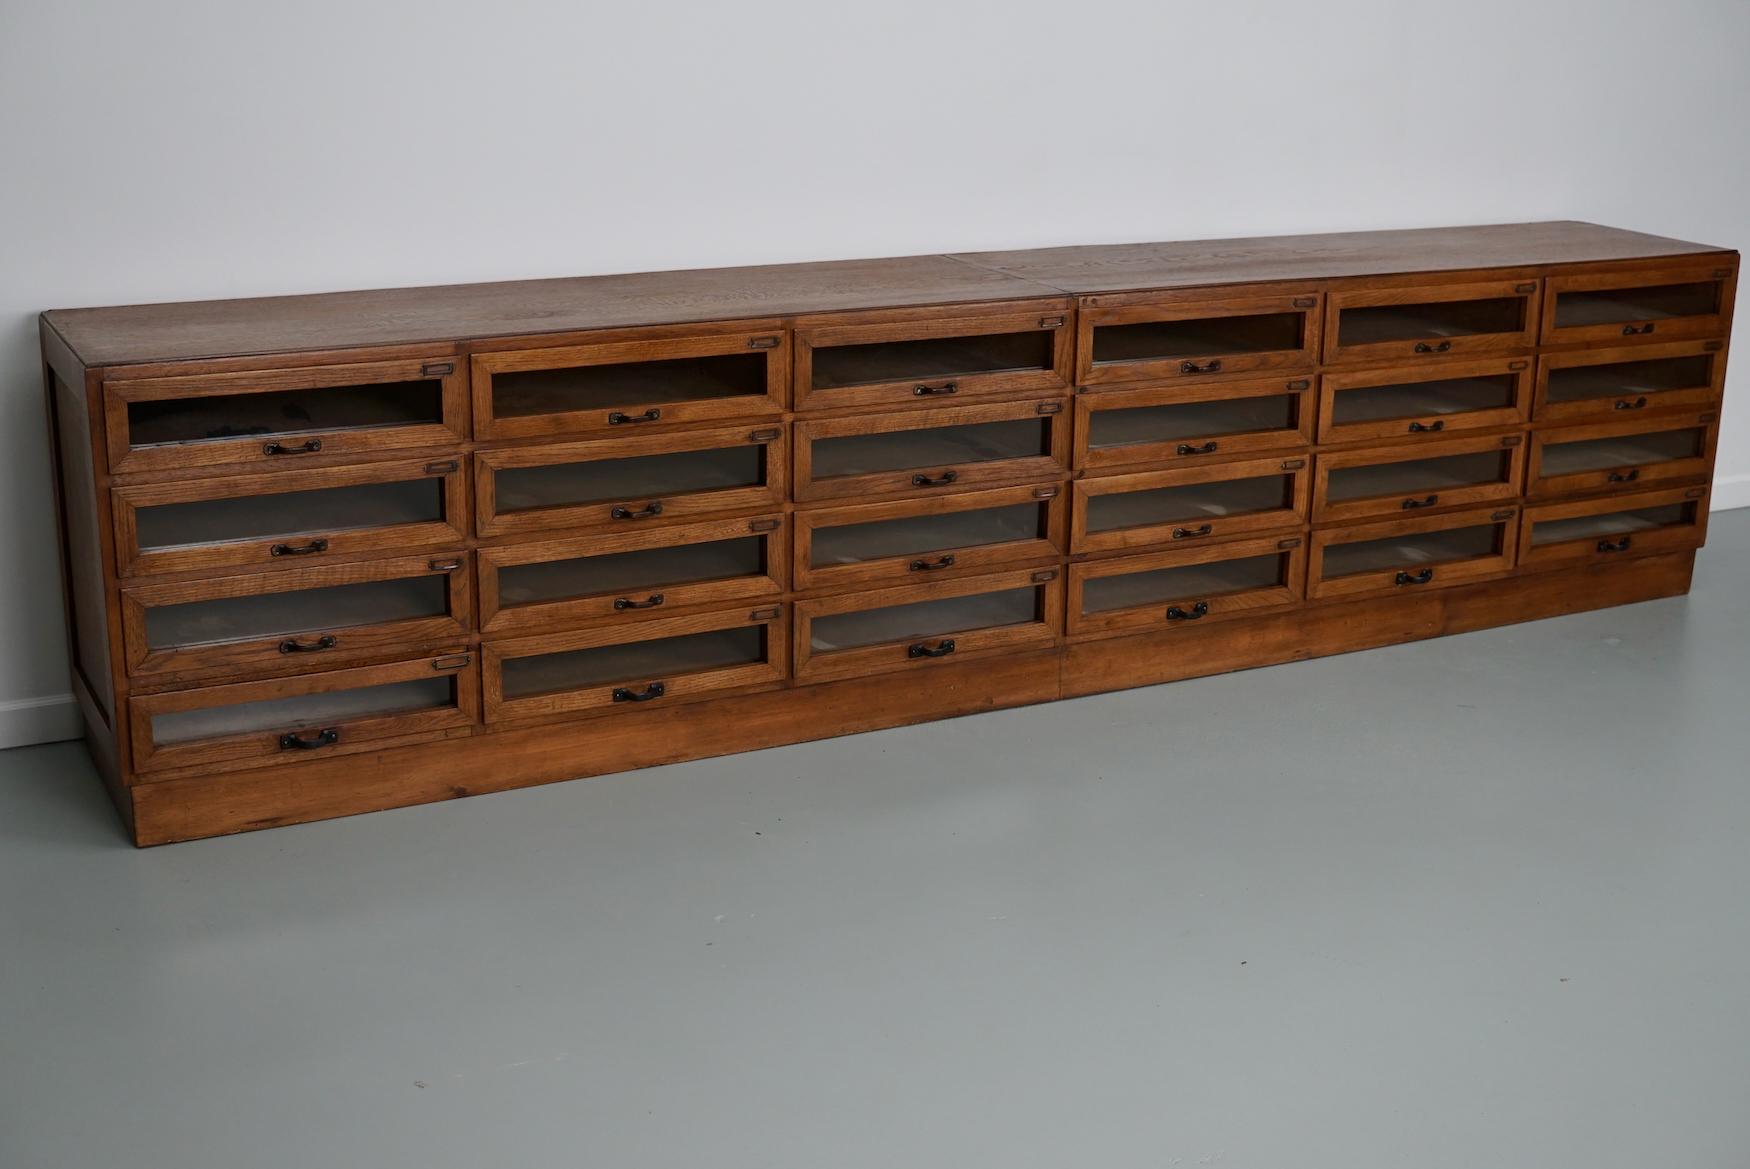 Ce meuble de mercerie a été fabriqué dans les années 1950 aux Pays-Bas. Il comprend 24 grands tiroirs en chêne avec des façades en verre et des poignées en métal. Les dimensions intérieures des tiroirs sont les suivantes DWH 40 x 45 x 10,5 cm.